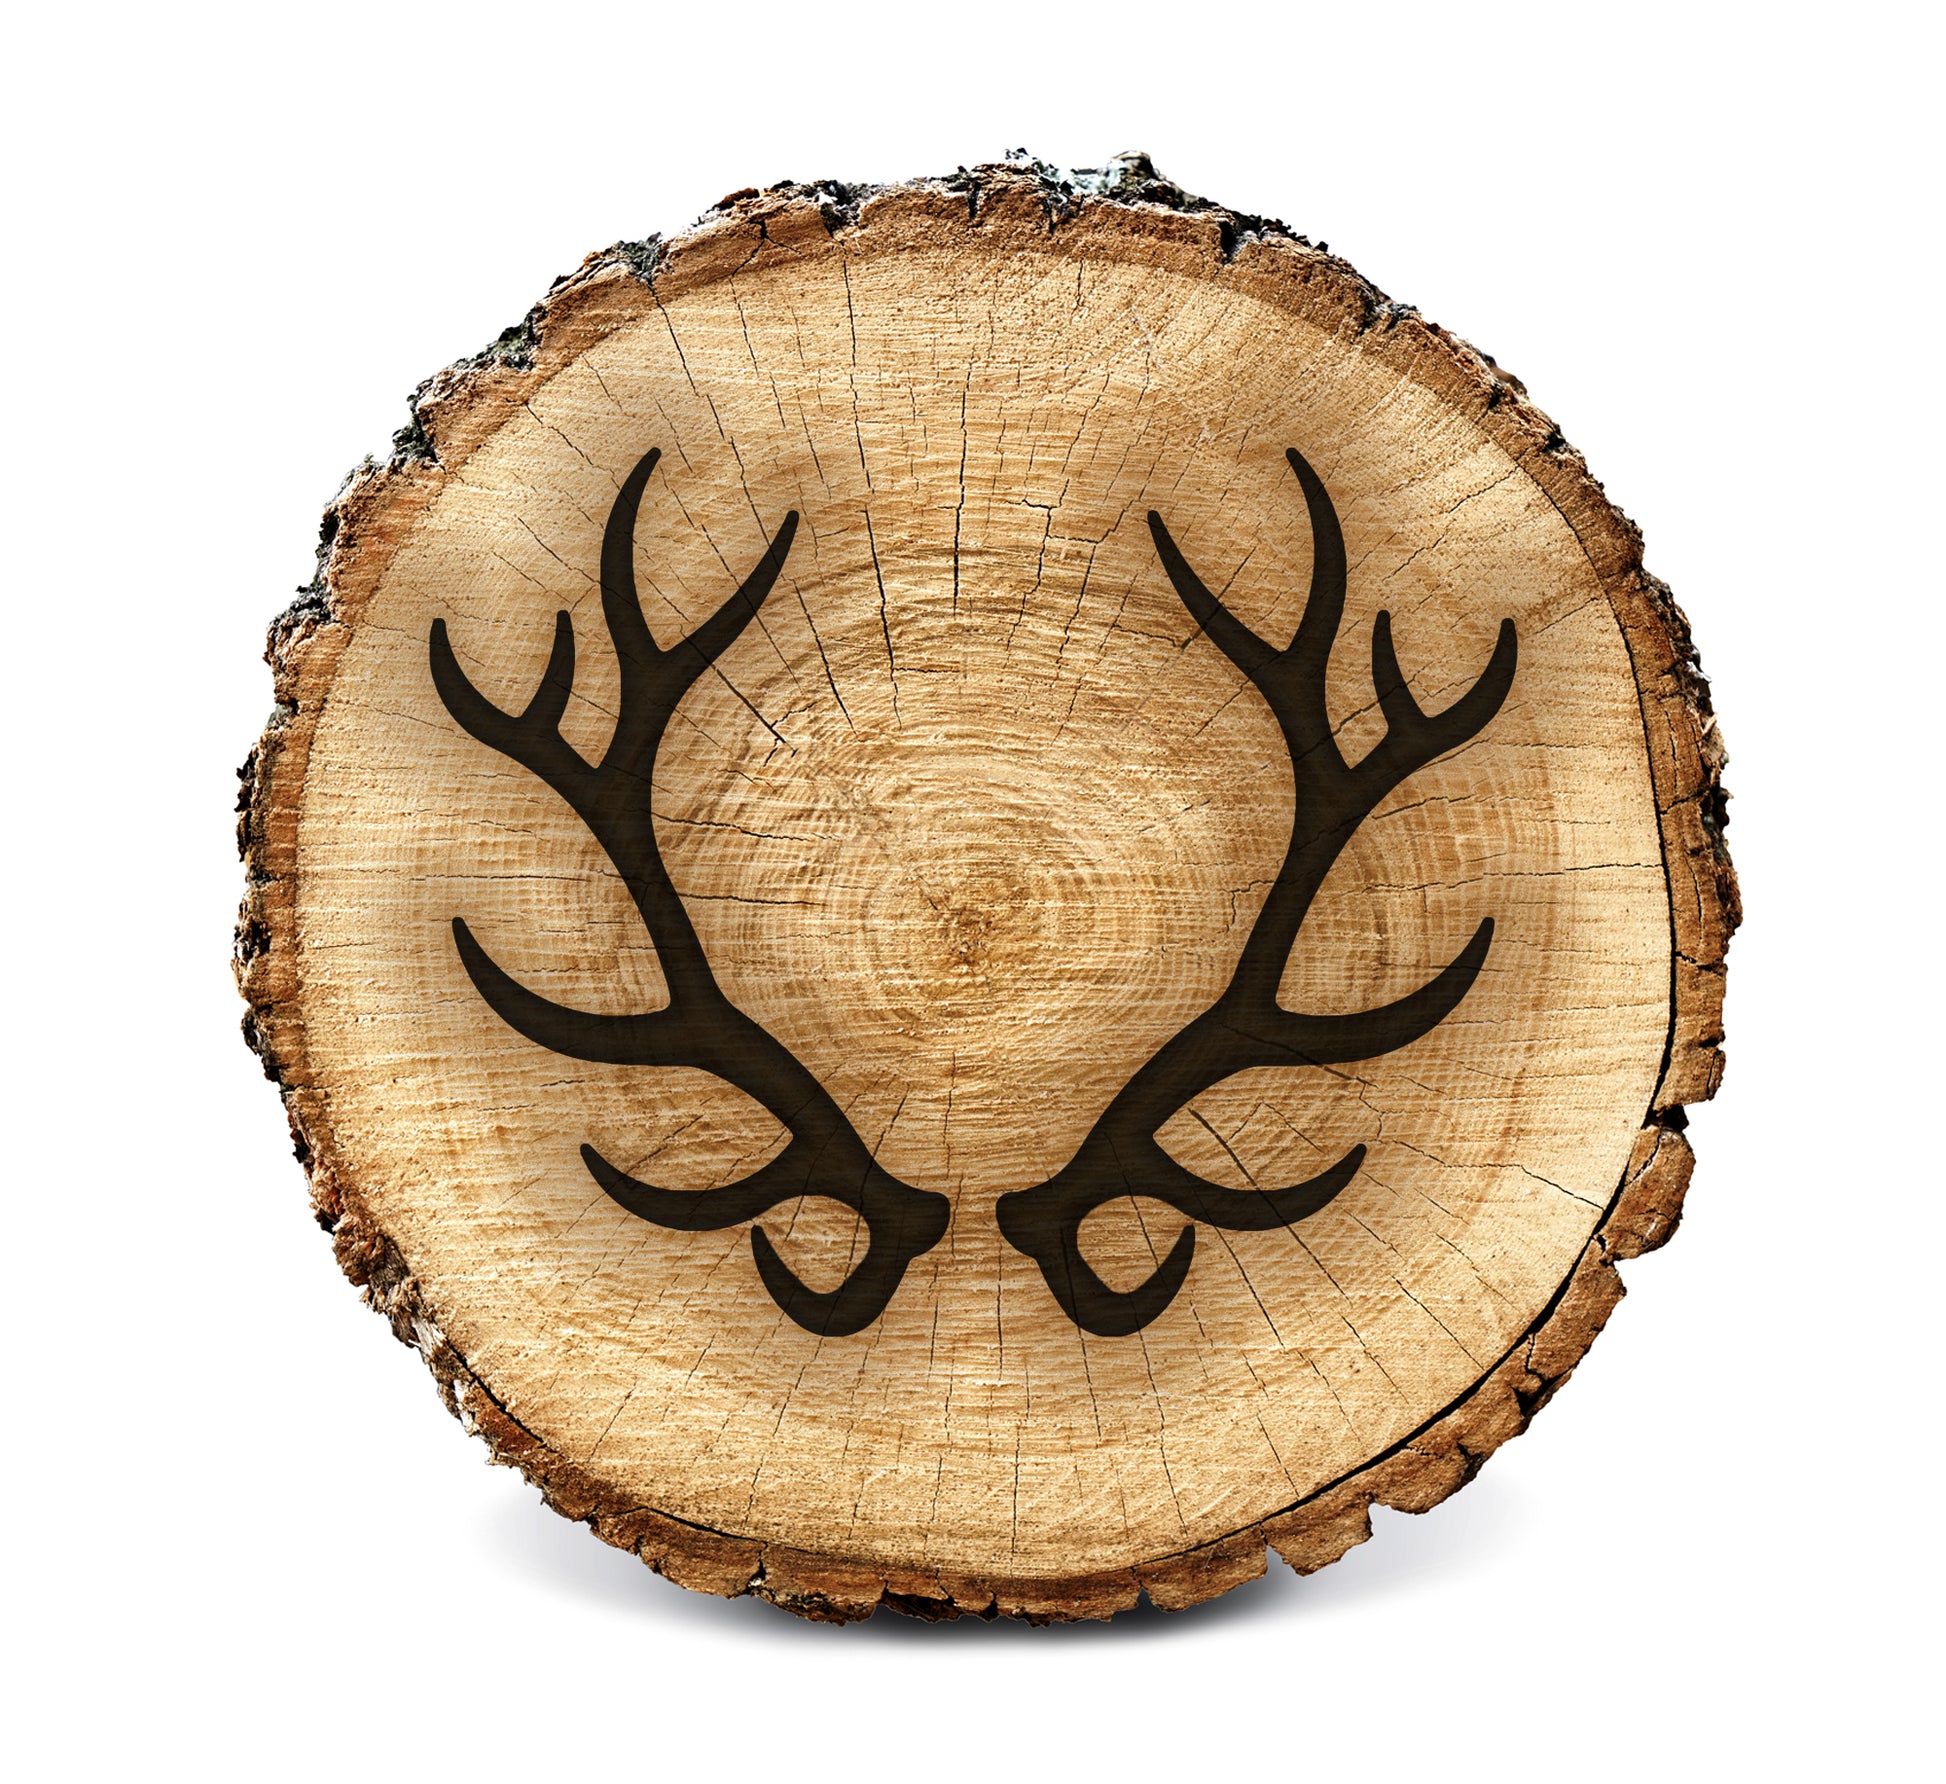 Lumberjack Tools® Wood Burning Stencil - Antlers (Elk)